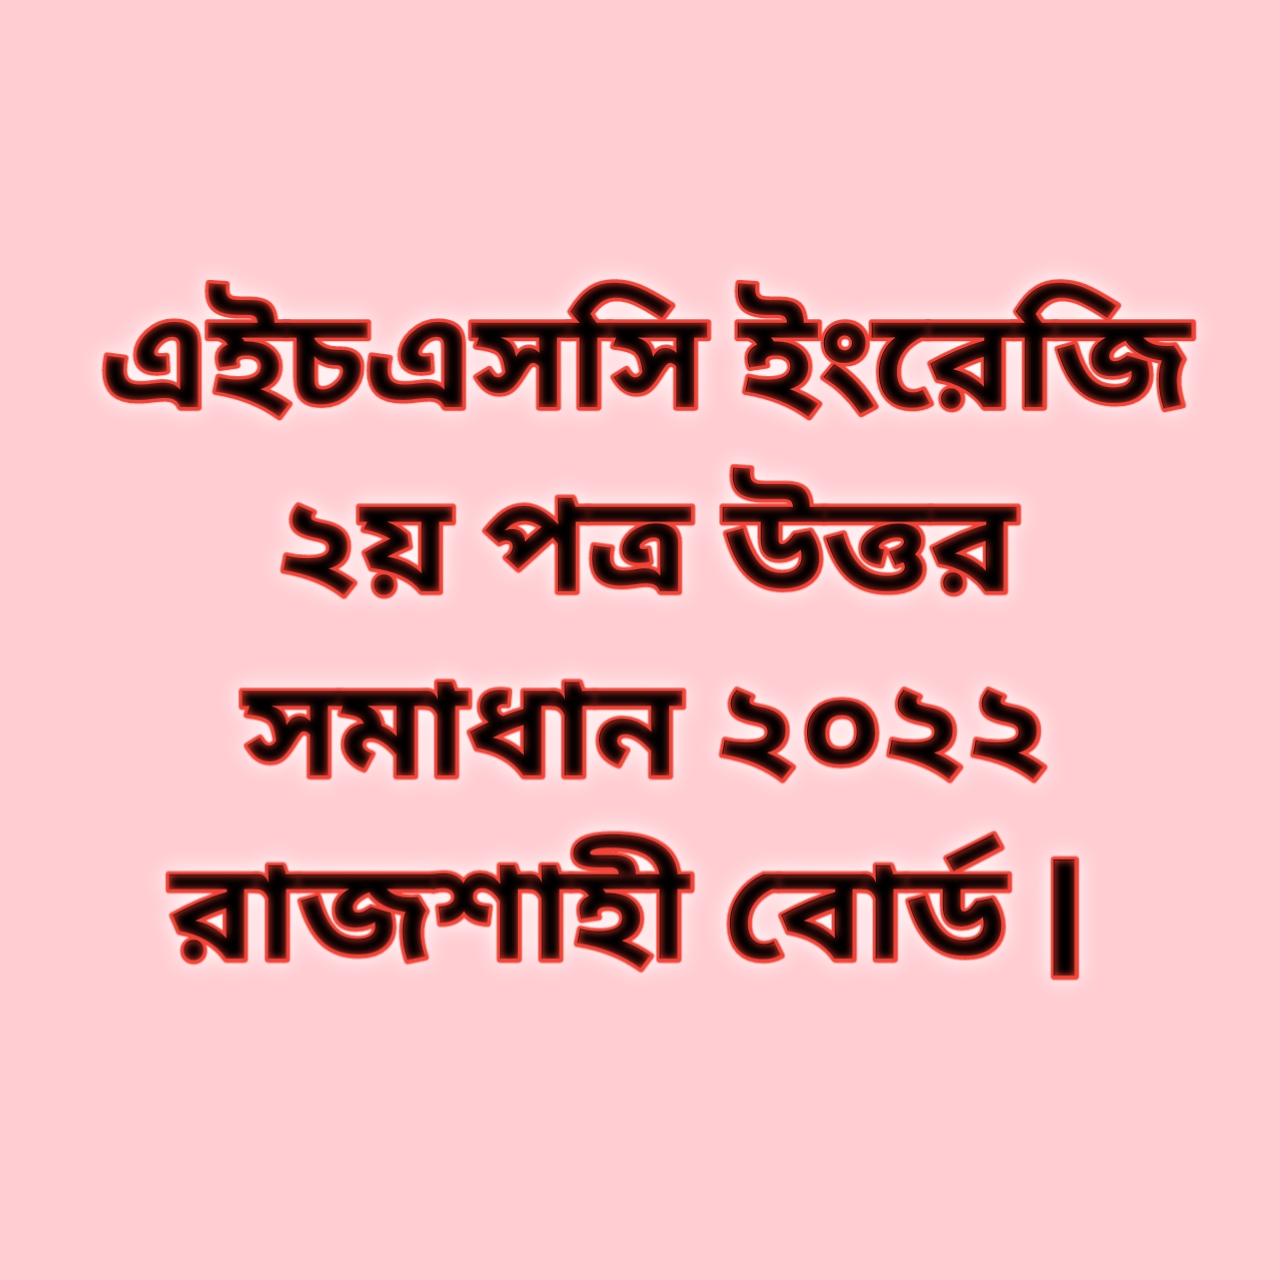 এইচএসসি ইংরেজি ২য় পত্র সিকিউ প্রশ্ন উত্তর সমাধান ২০২২ রাজশাহী বোর্ড | hsc English 2nd paper cq question solution answer 2022 Rajshahi Board